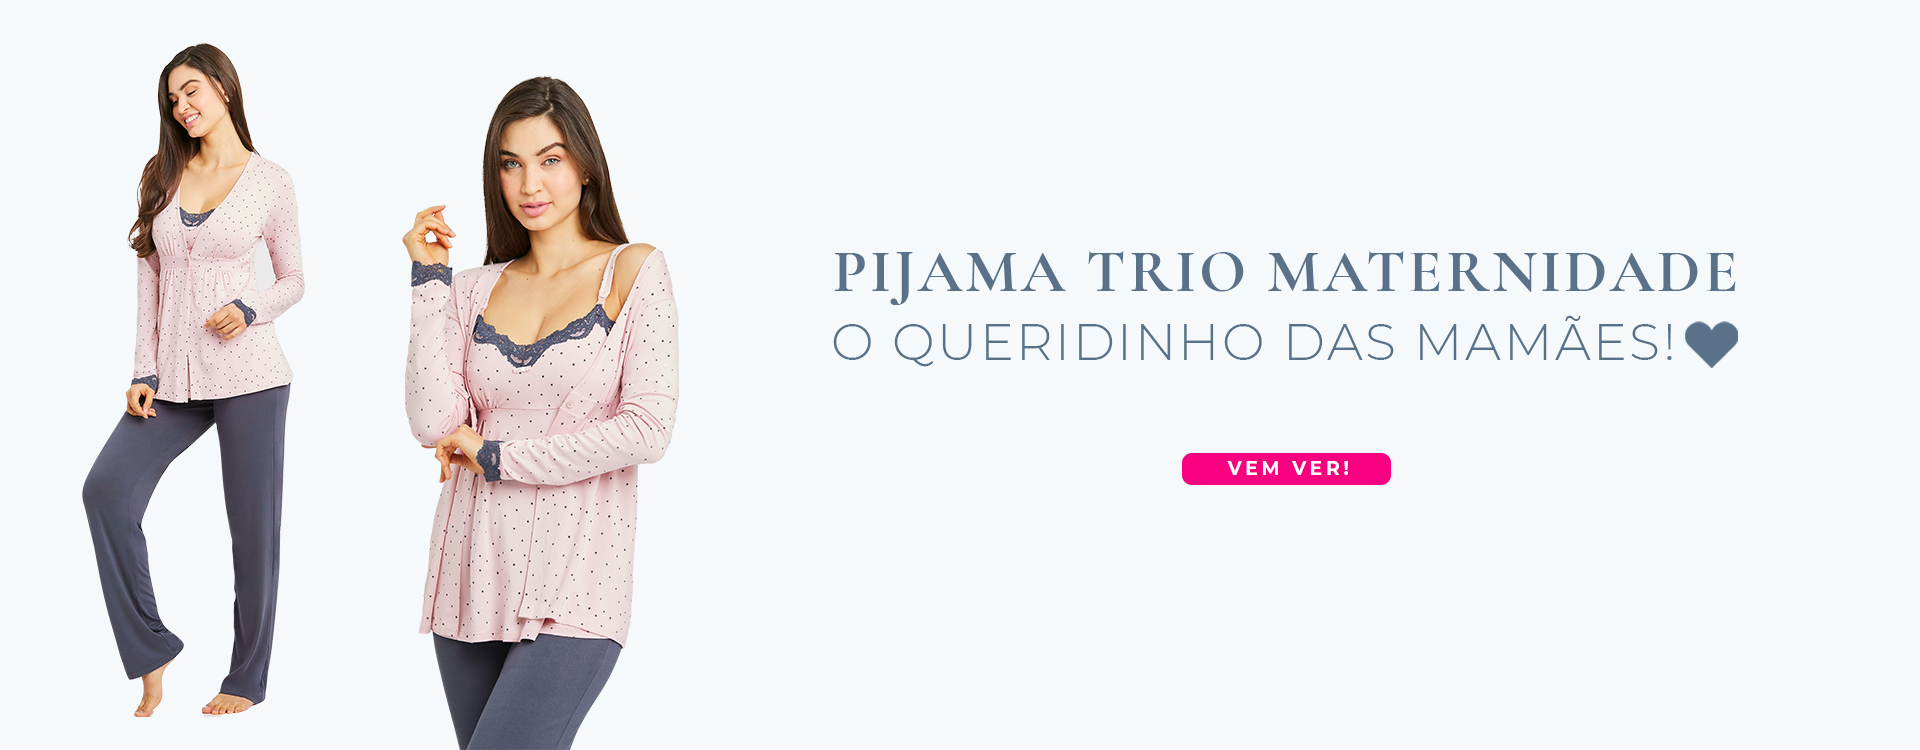 Pijama Trio Maternidade